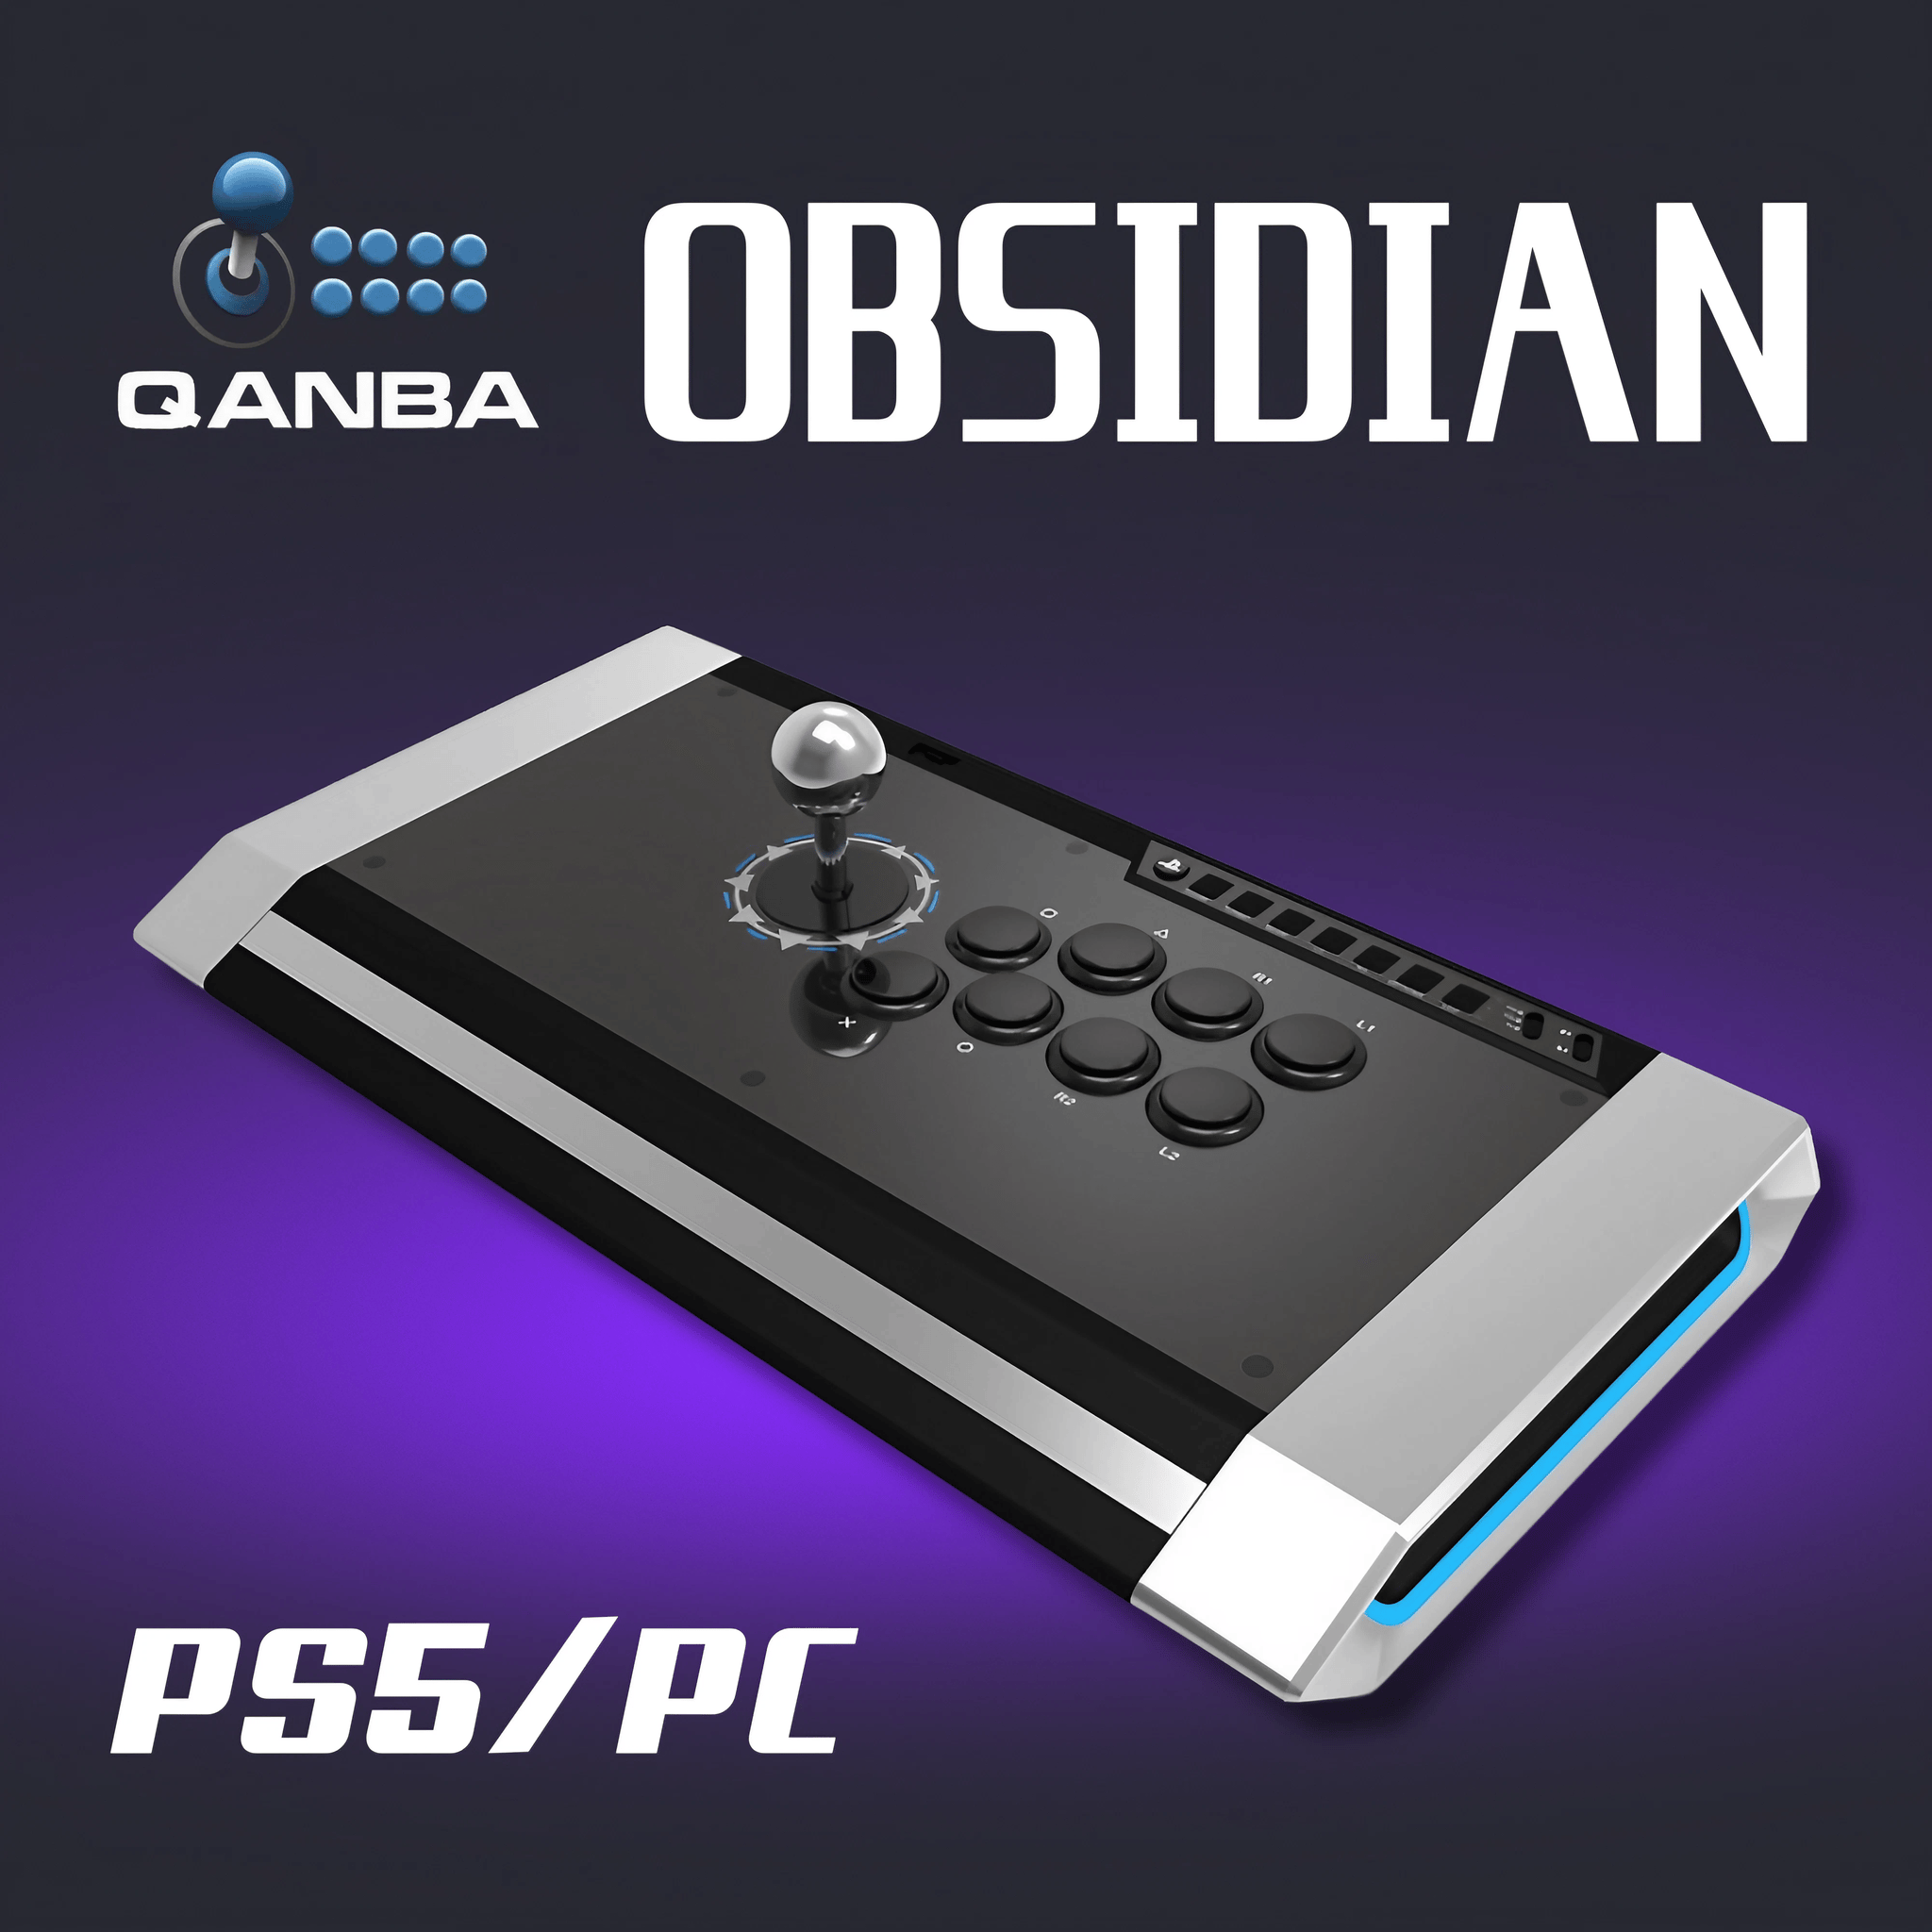 アケコン レバーレス ゲームパッド 通販ショップ ゲームコントローラー専門店 CIELOGAMES アケコン Qanba Q3 Obsidian Arcade Joystick Black  